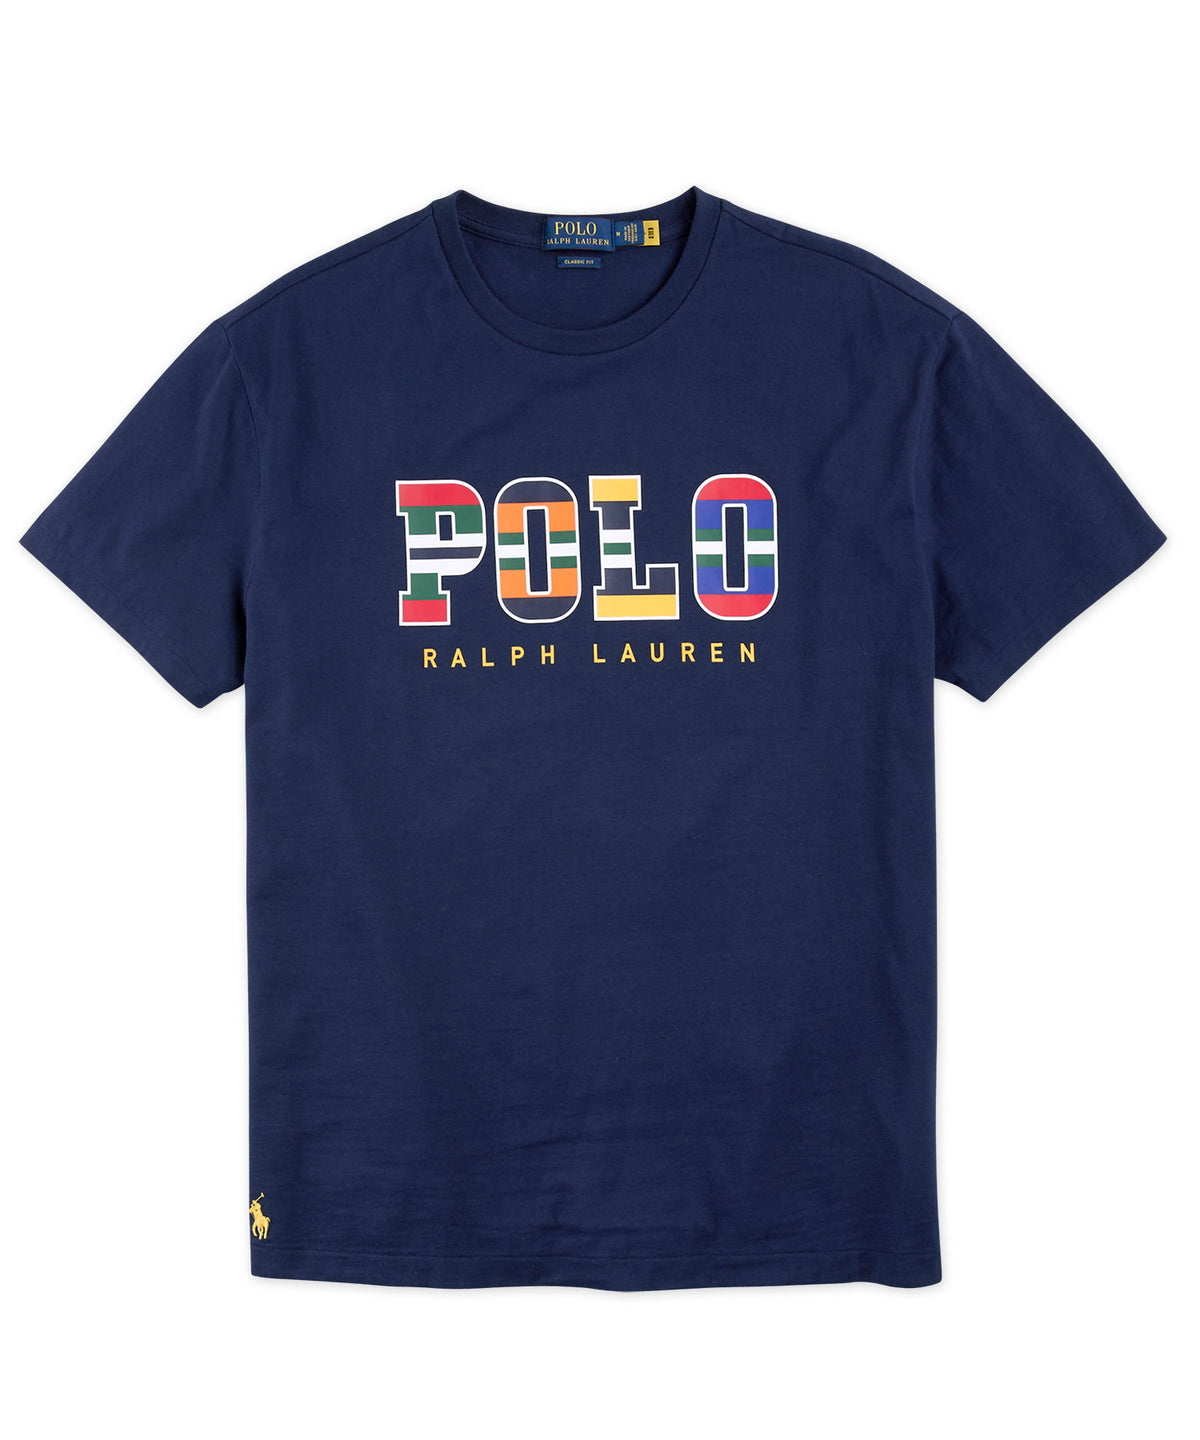 Polo Ralph Lauren Short Sleeve Graphic Tee Shirt